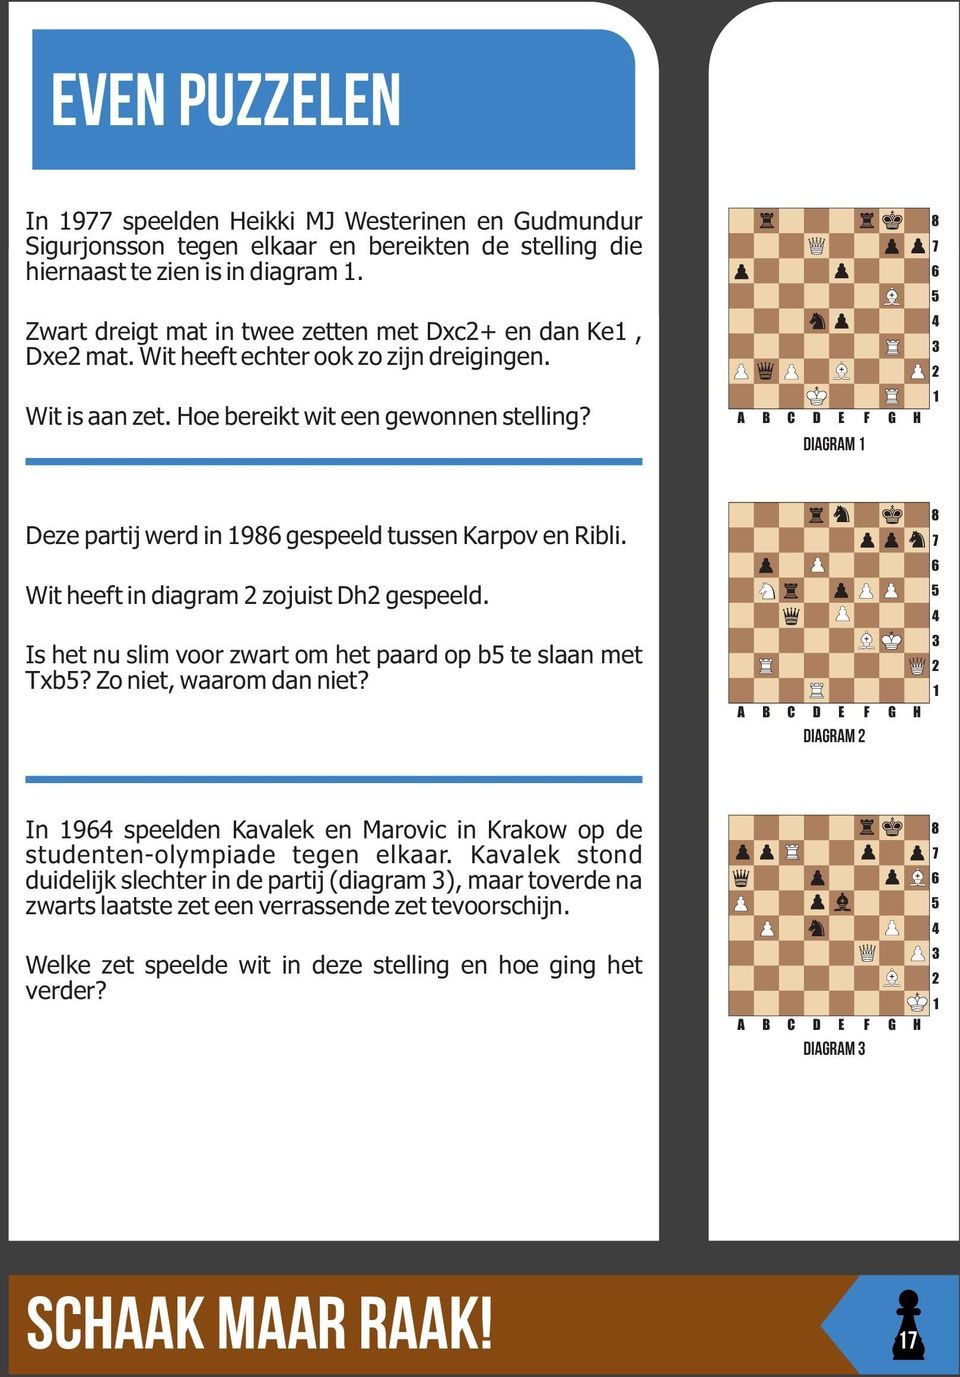 diagram Deze partij werd in 9 gespeeld tussen Karpov en Ribli. Wit heeft in diagram zojuist Dh gespeeld. Is het nu slim voor zwart om het paard op b te slaan met Txb? Zo niet, waarom dan niet?